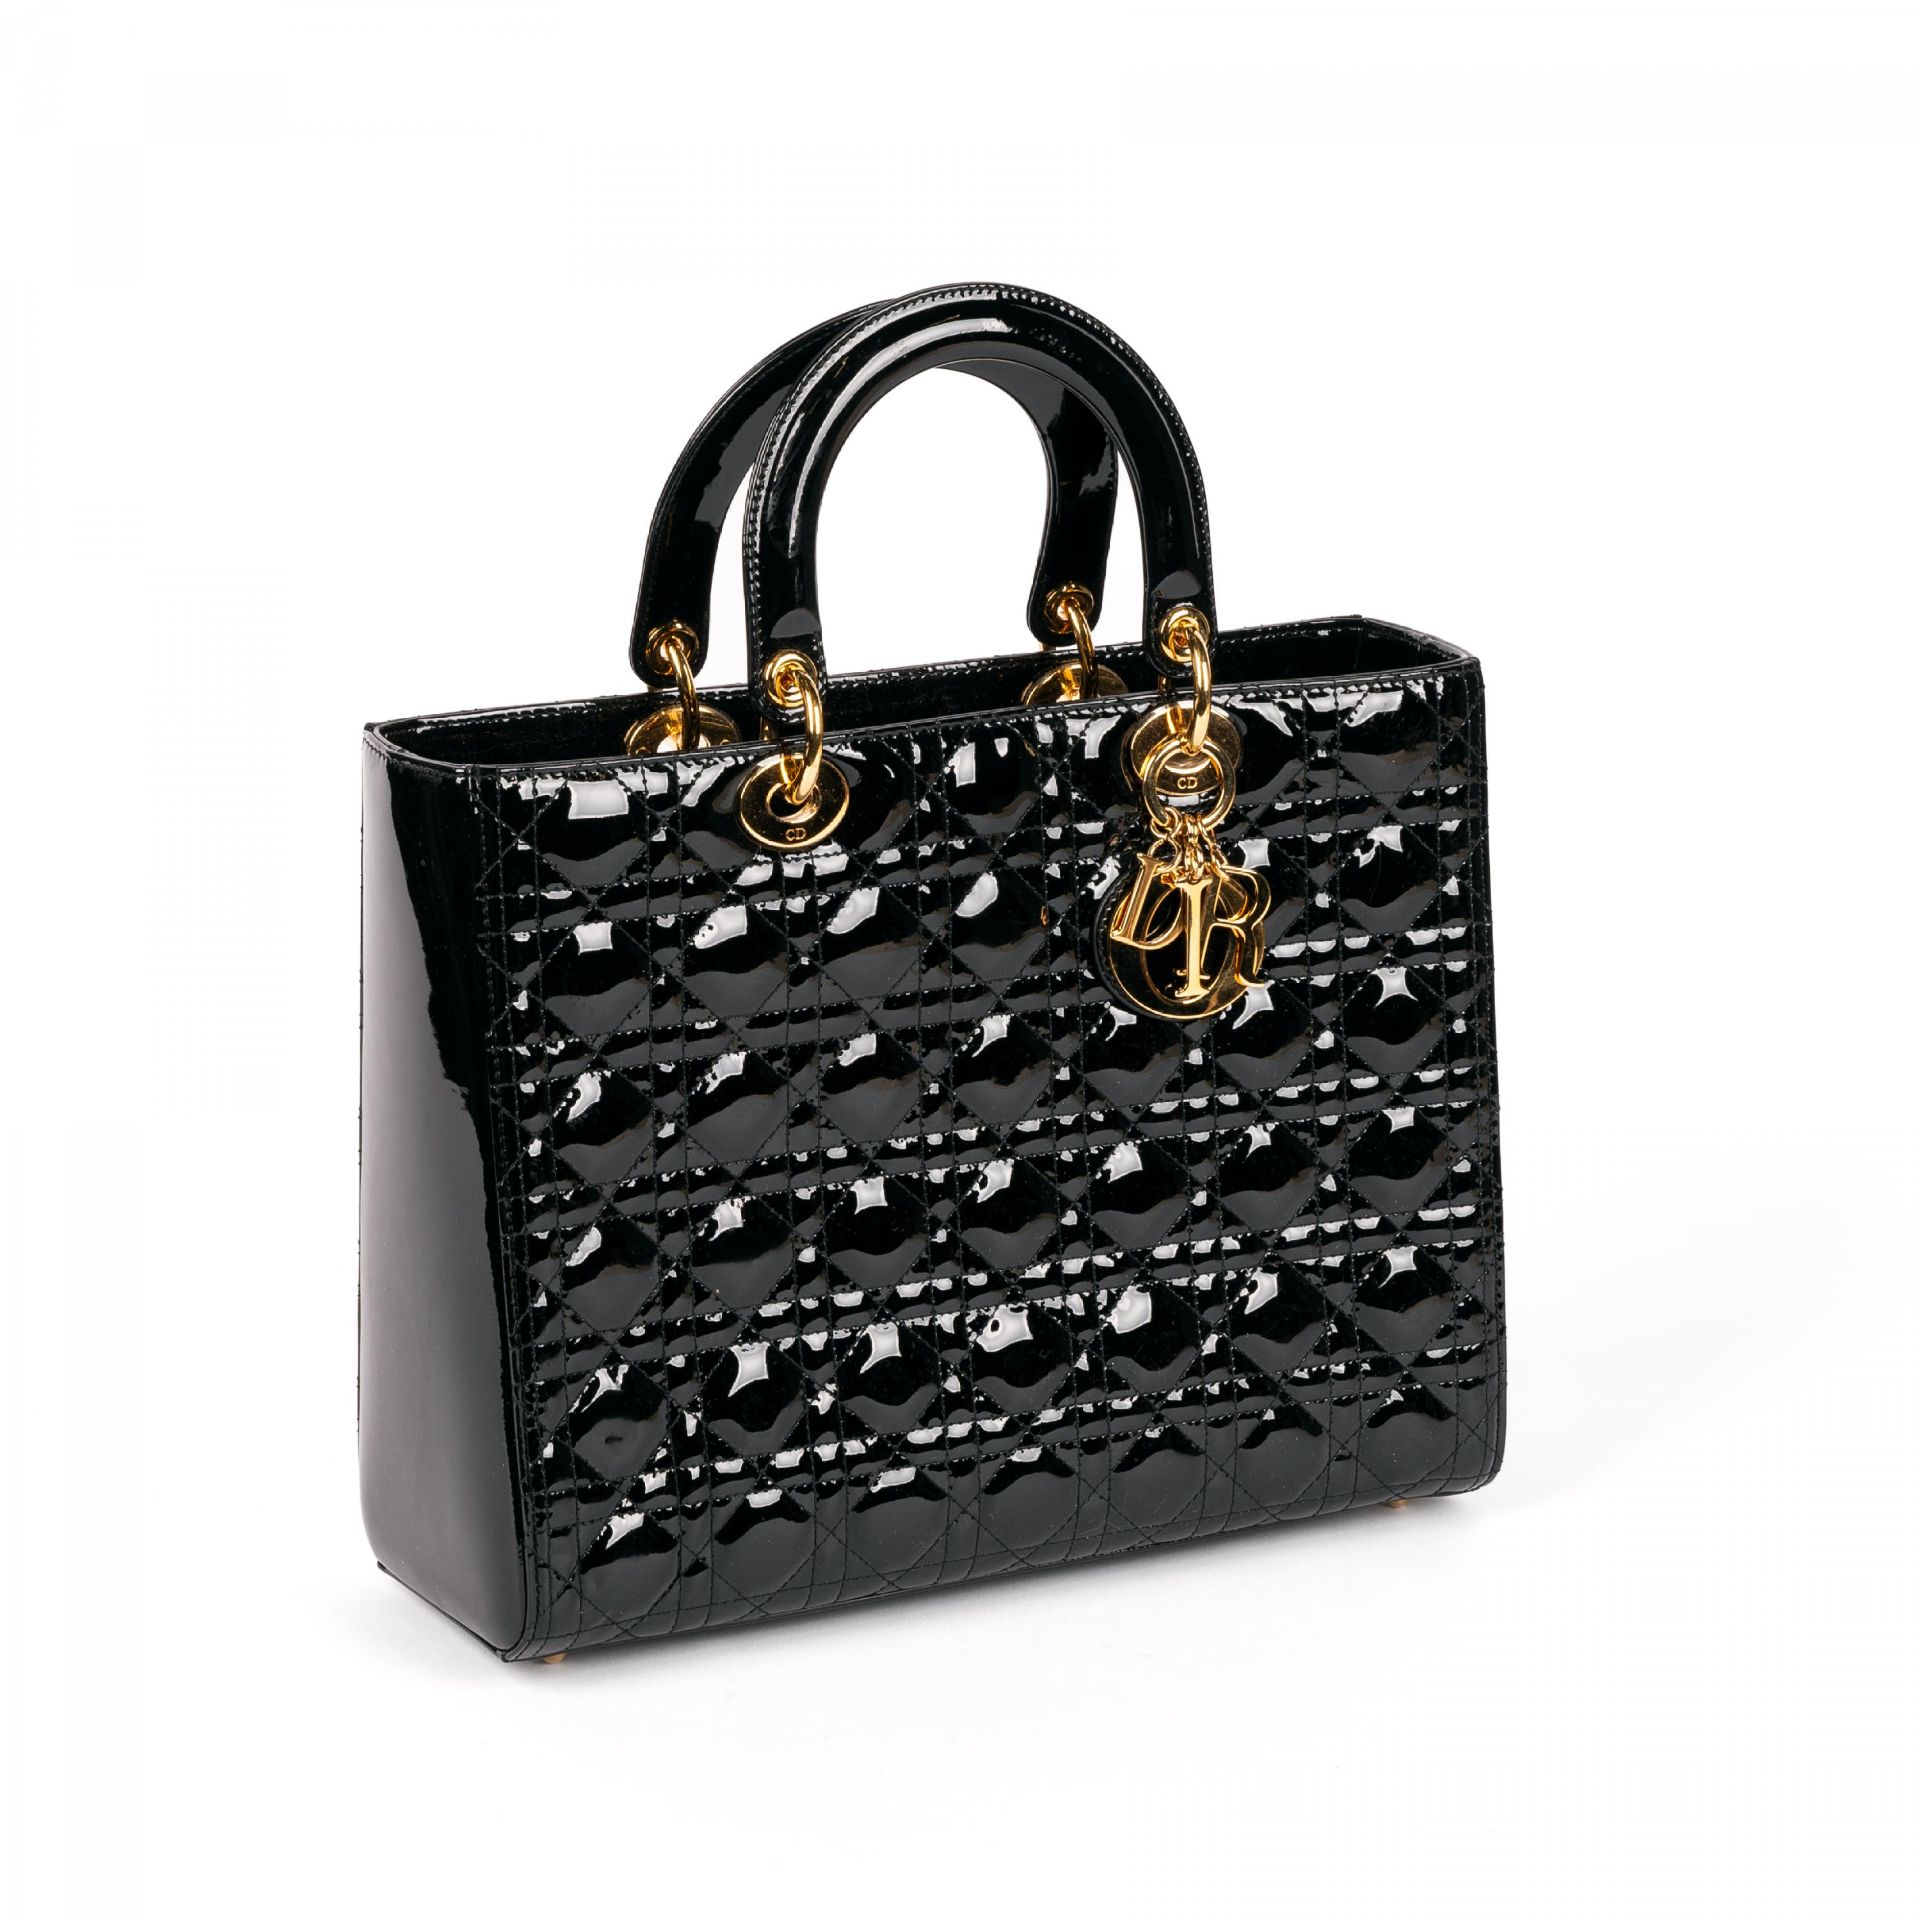 Christian Dior: Handtasche 'Lady Dior'